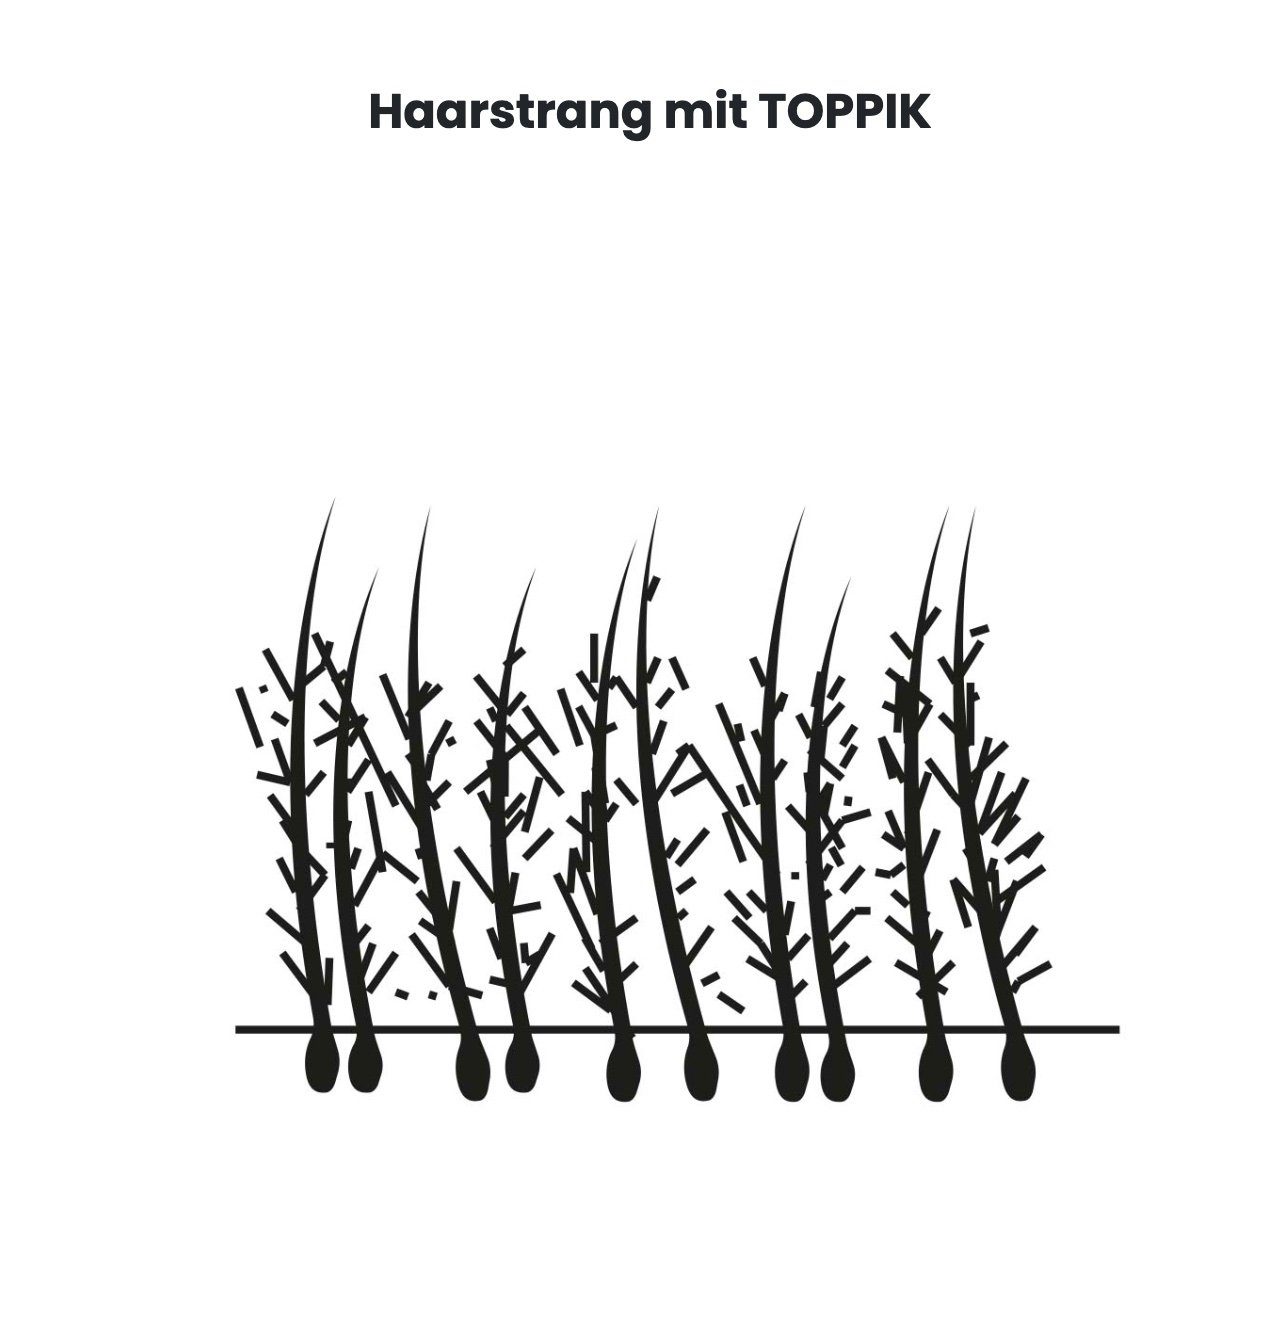 TOPPIK Streuhaar, Hair Haarverdichtung, Schütthaar, Mittelbraun Fibers - Haarstyling-Set g. Haarfasern, Puder, TOPPIK 55